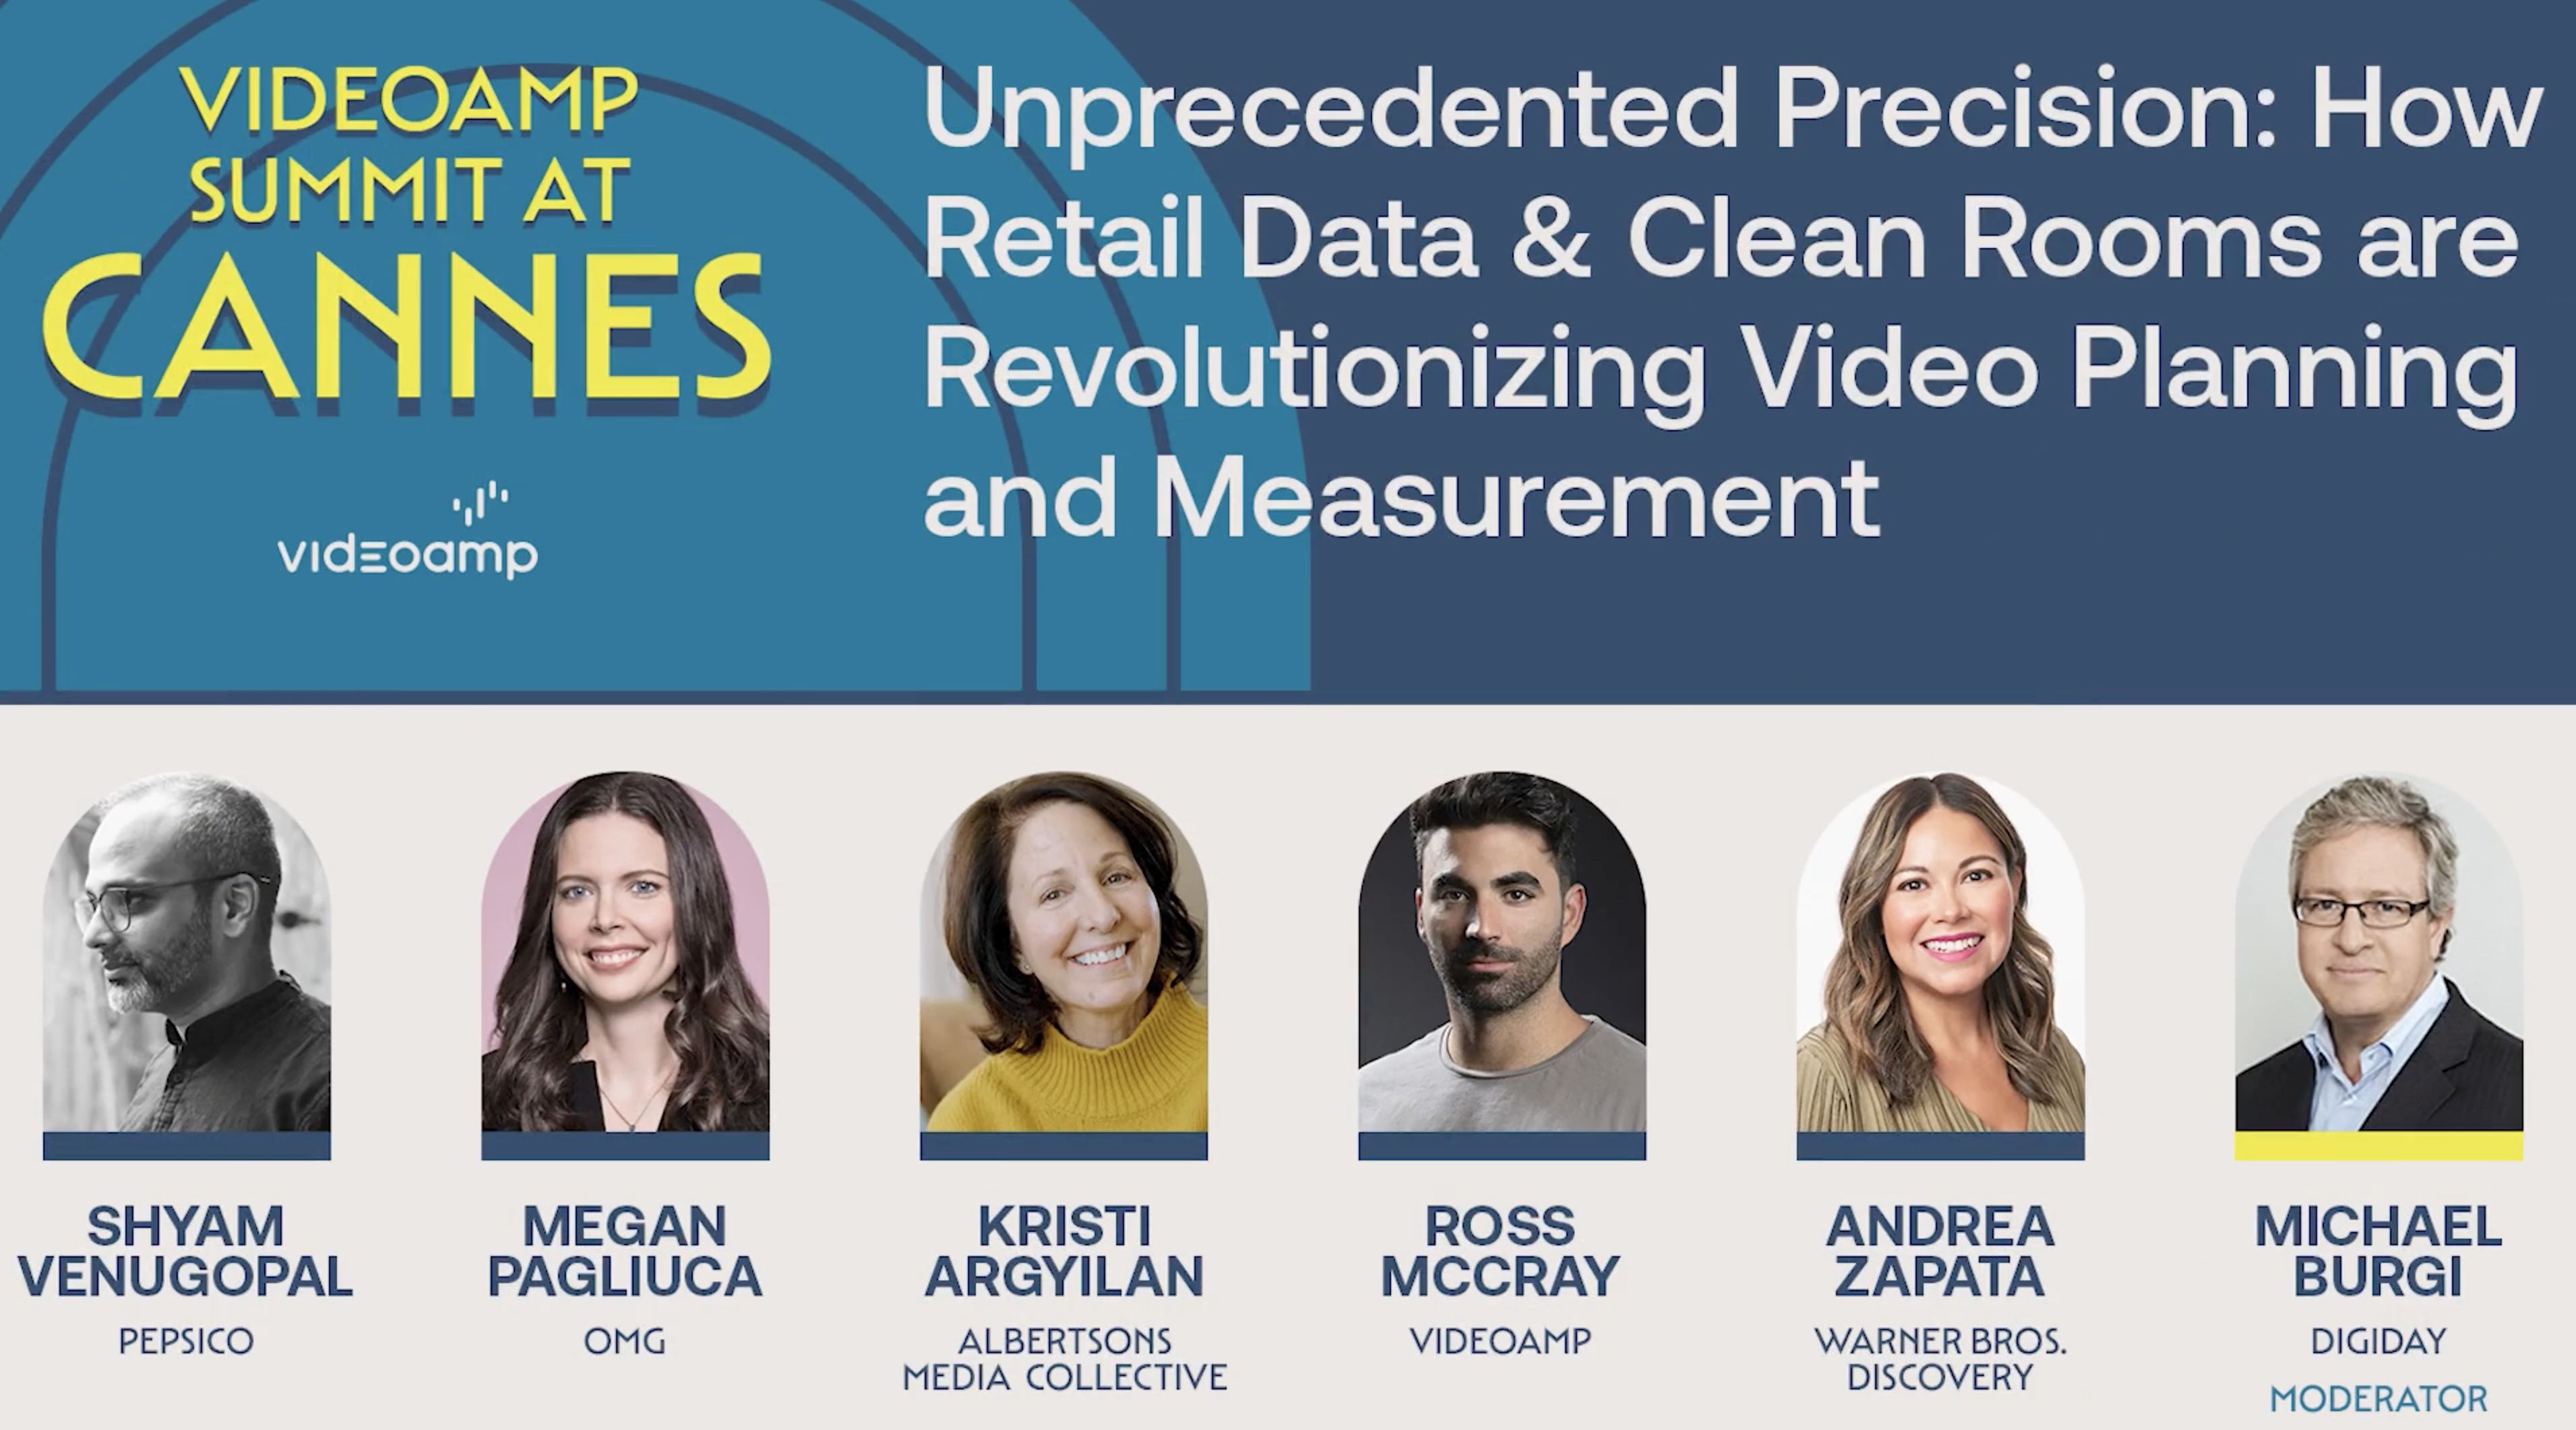 Unprecedented Precision Leveraging Retail Data & Clean Rooms